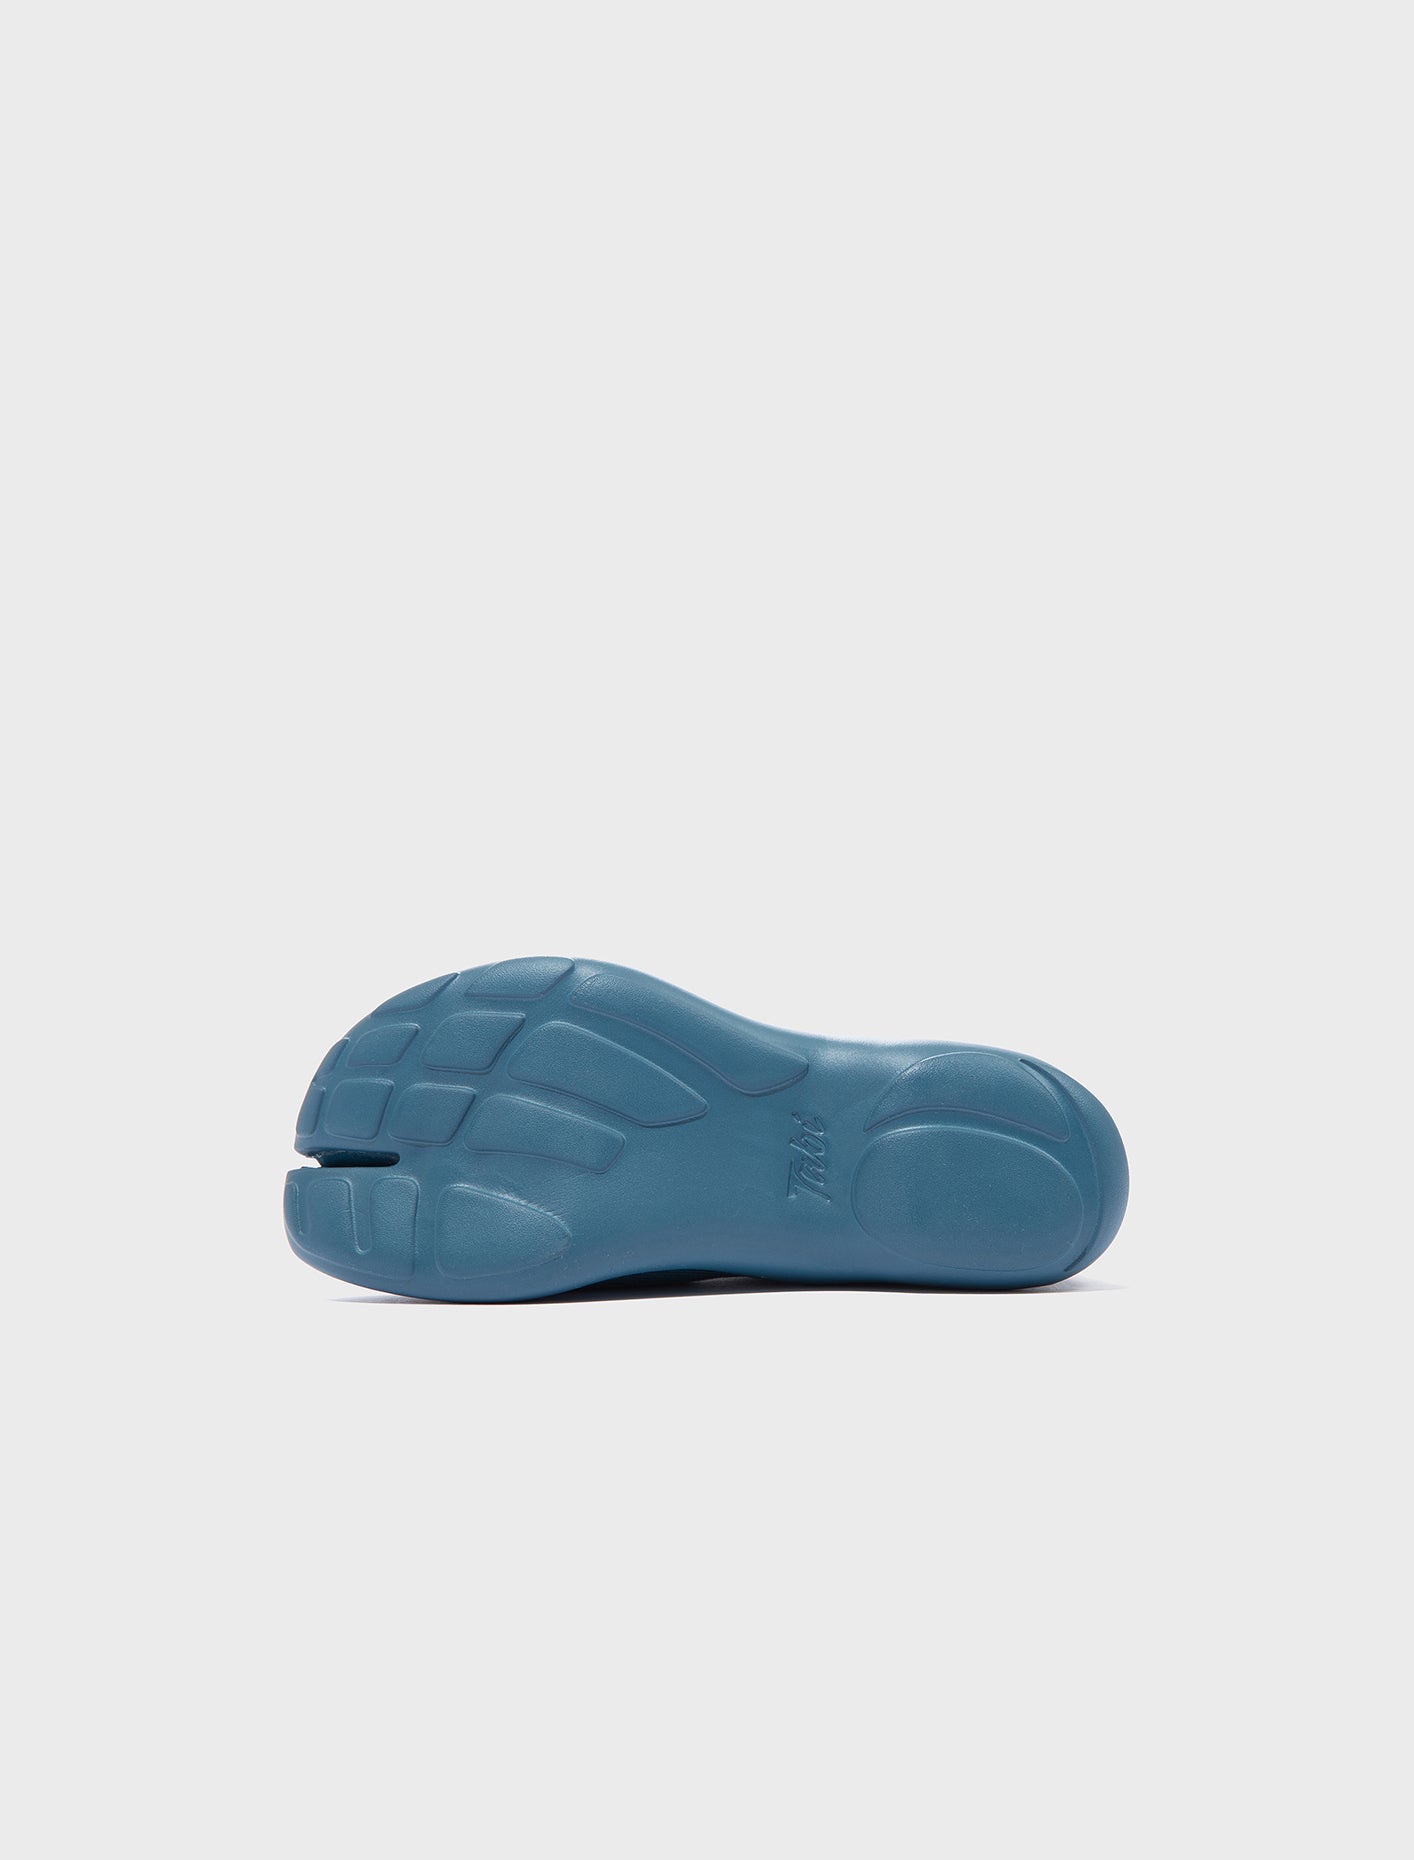 Tabi Footwear Tabi Shoe Men Shoes Blue